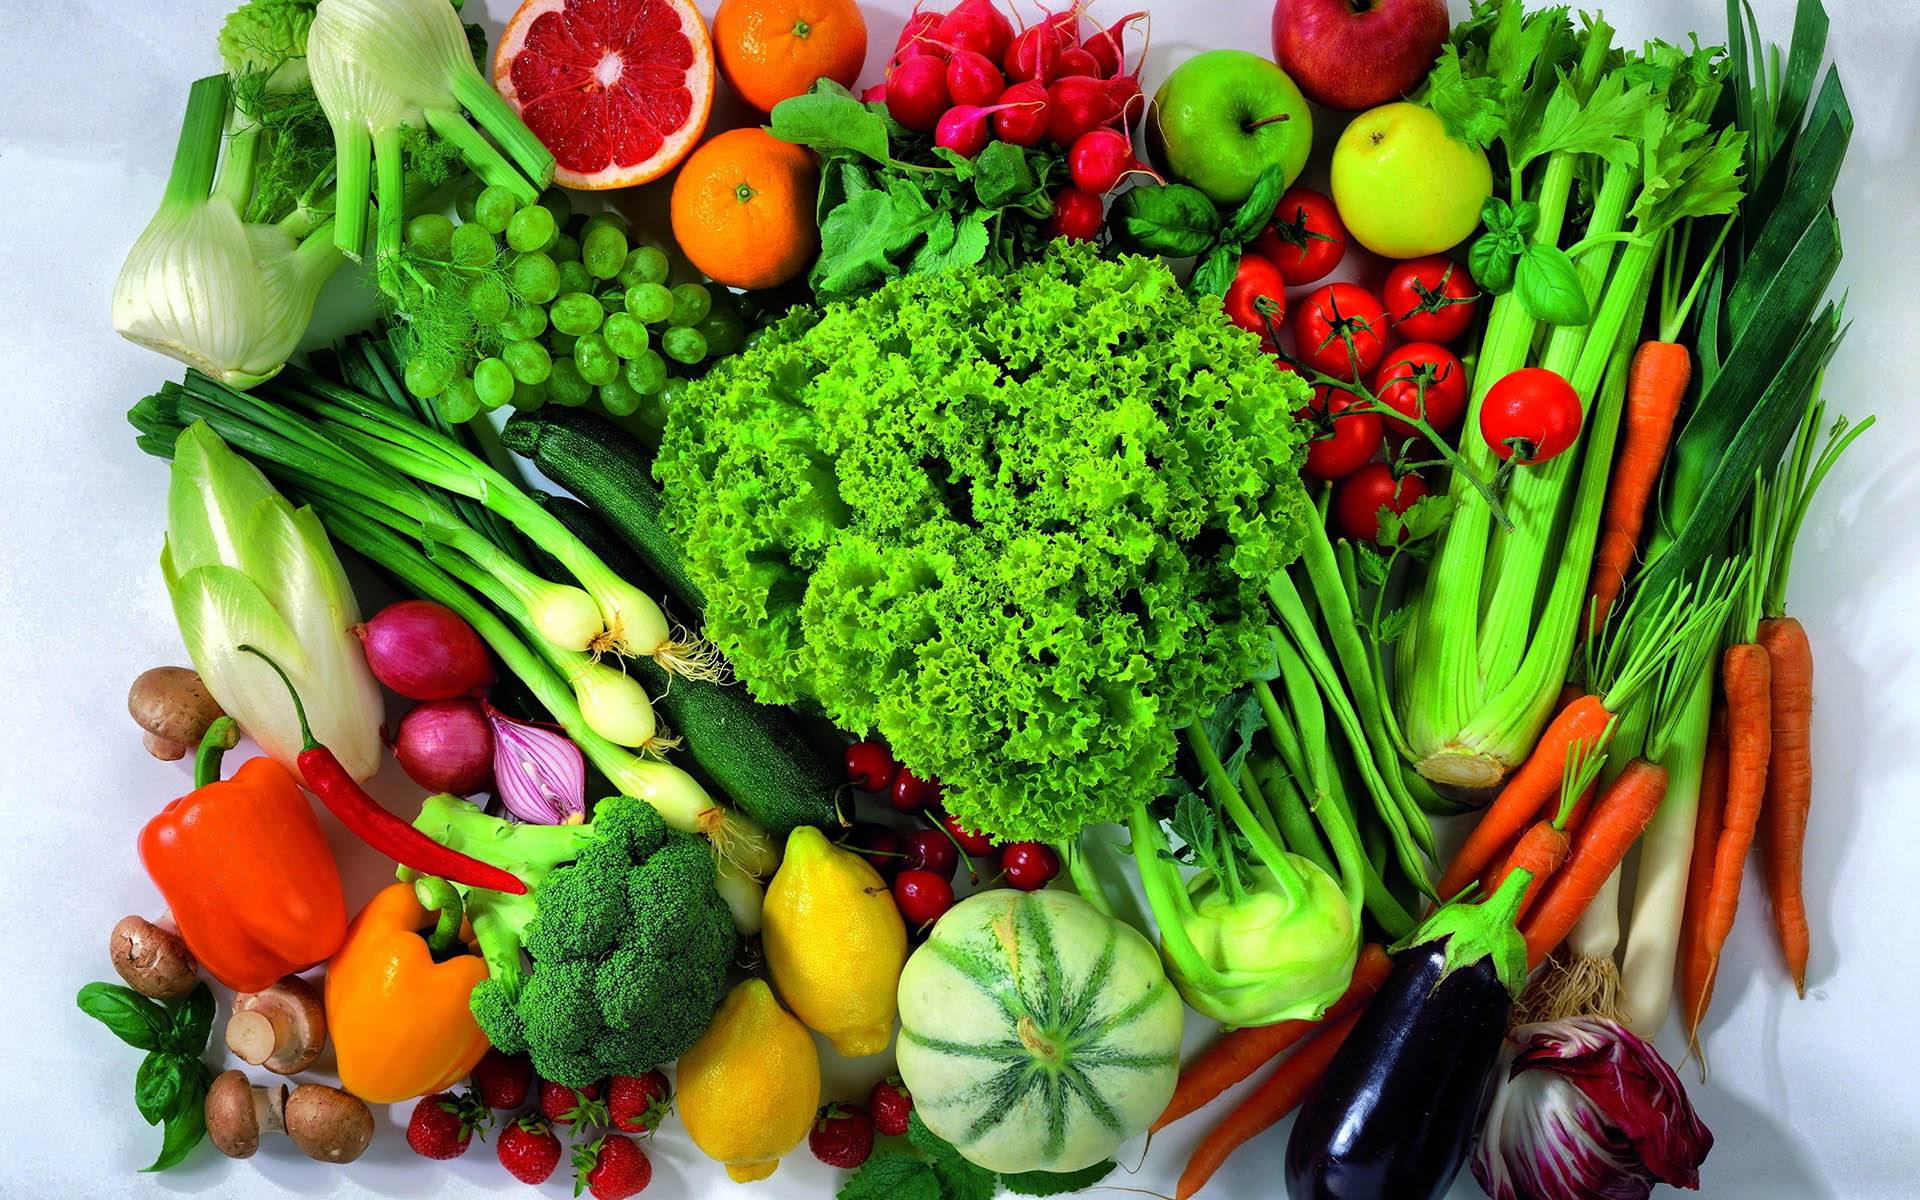 نگهداری از میوه و سبزیجات بدون استفاده از فریزر و یخچال